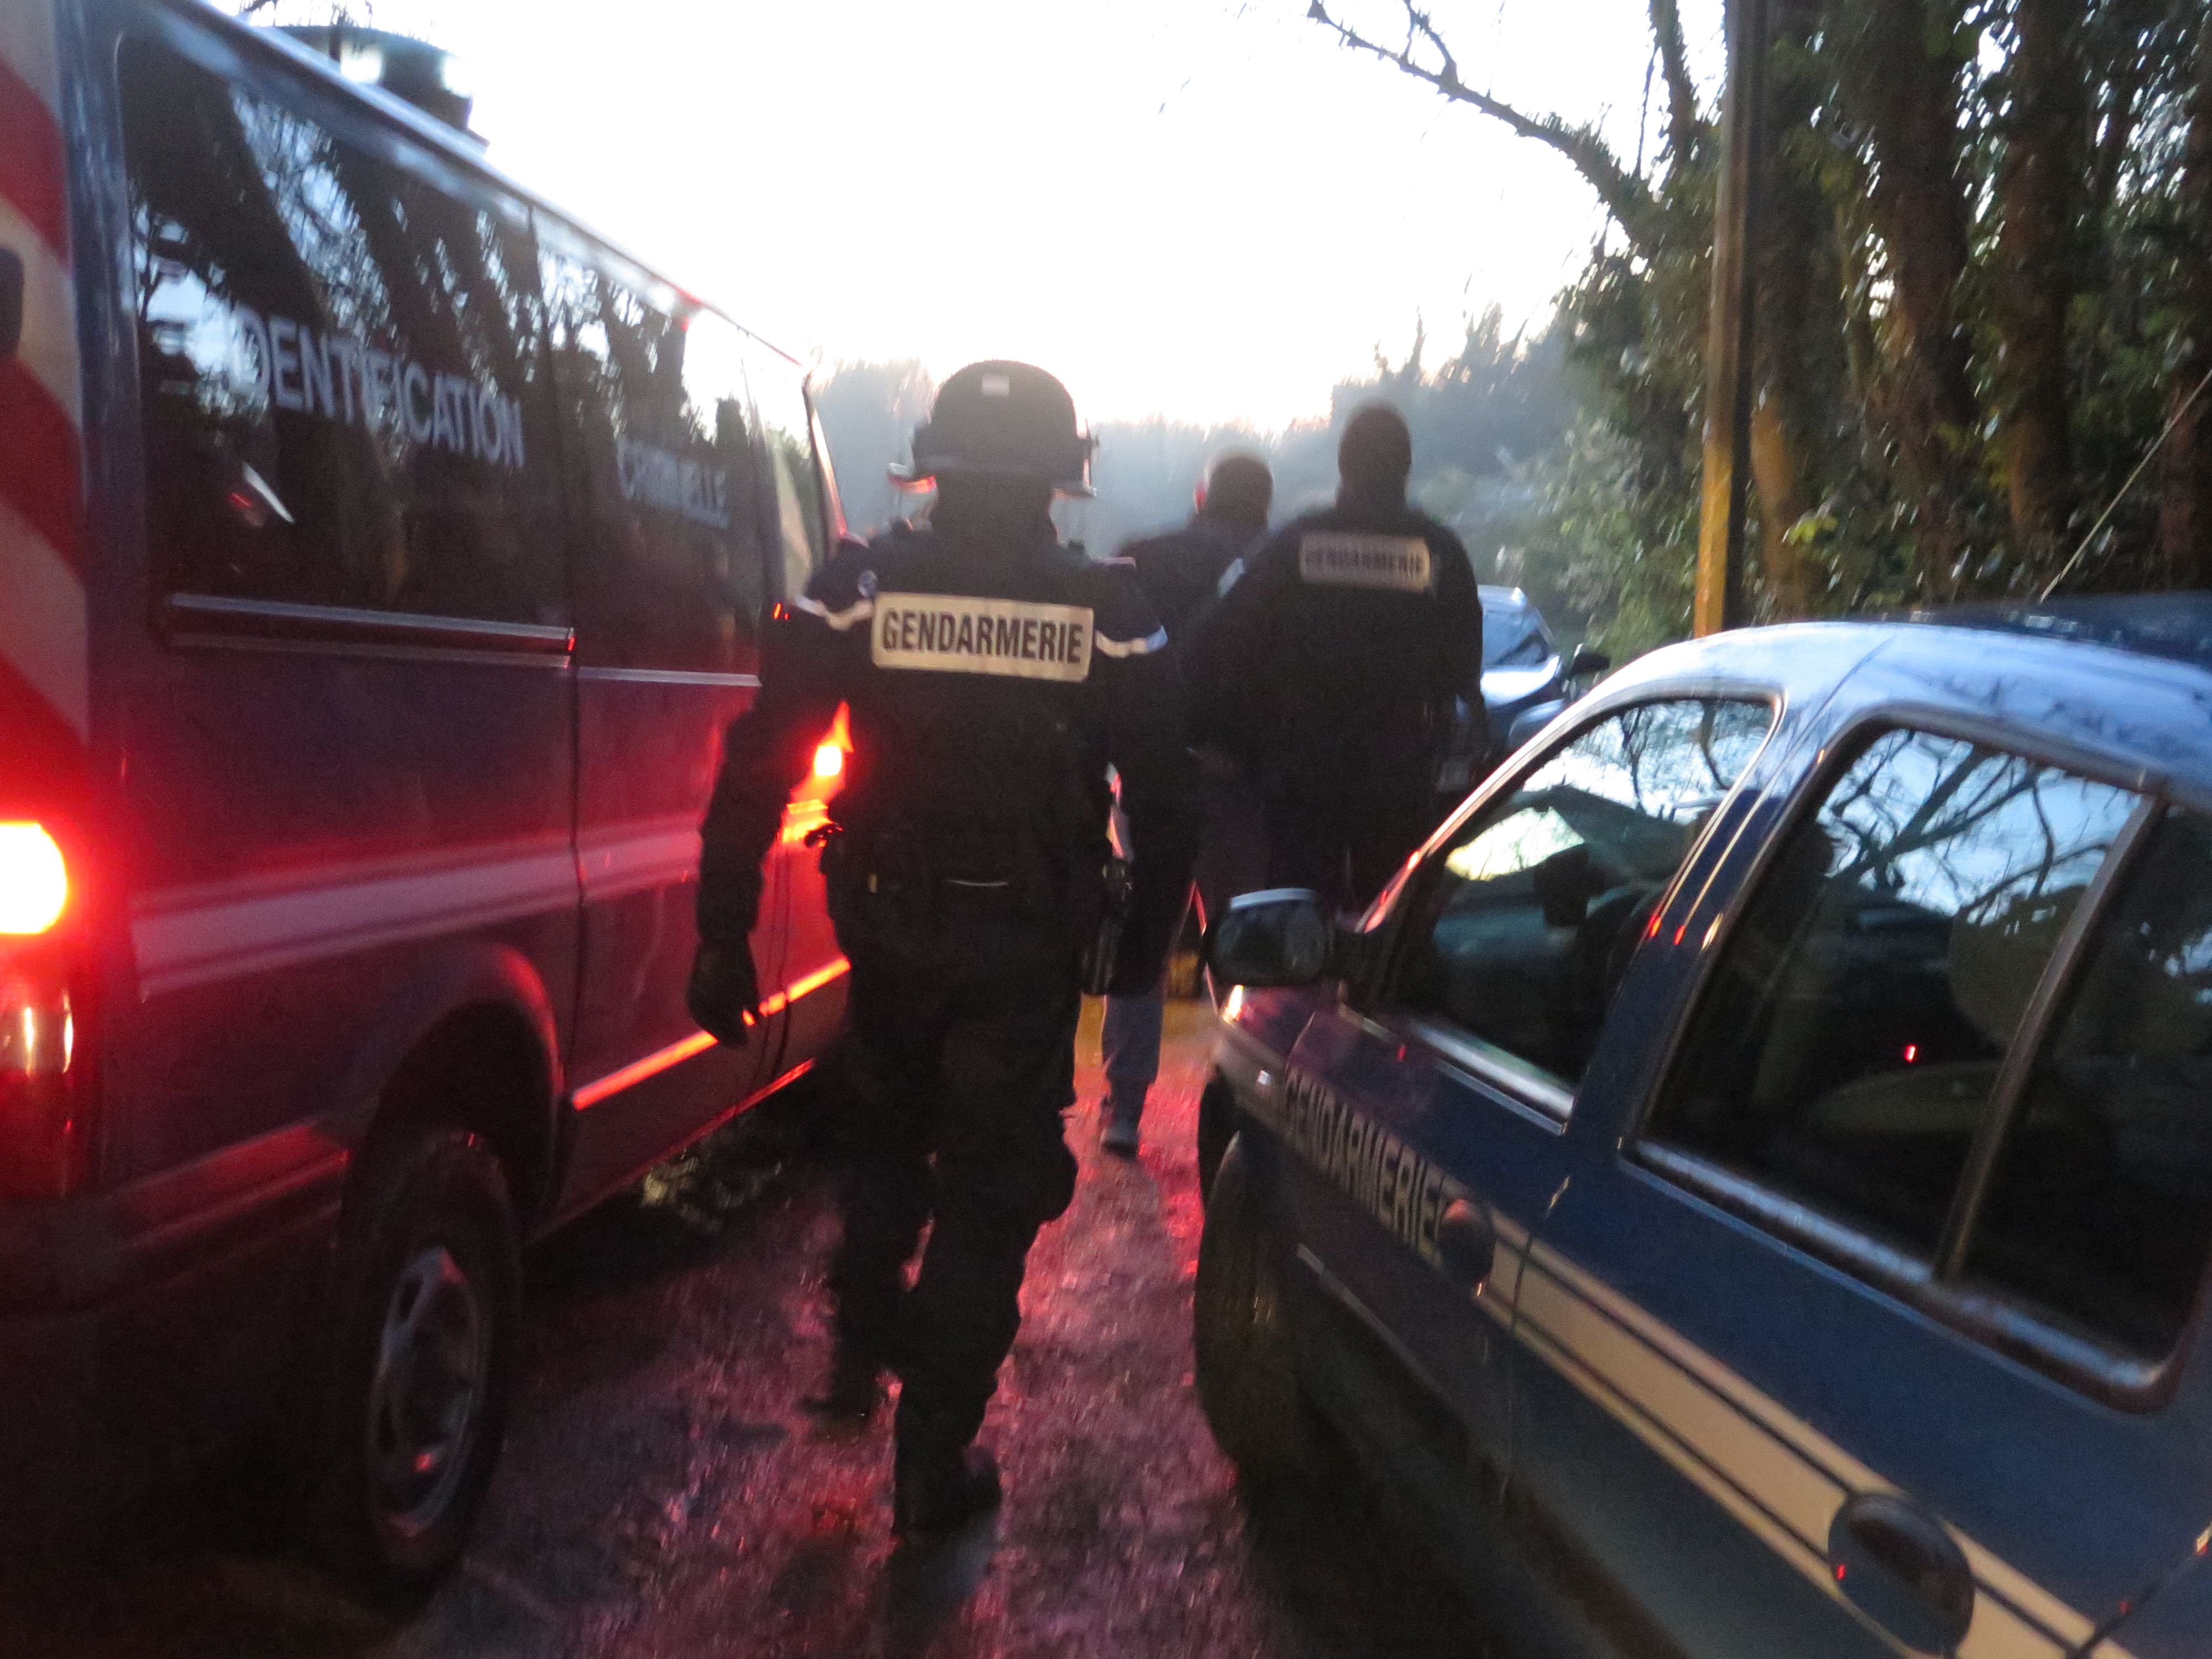 Les gendarmes se sont mobilisés en force pour interpeller les auteurs présumés des violences (Illustration). LP/Frédéric Naizot